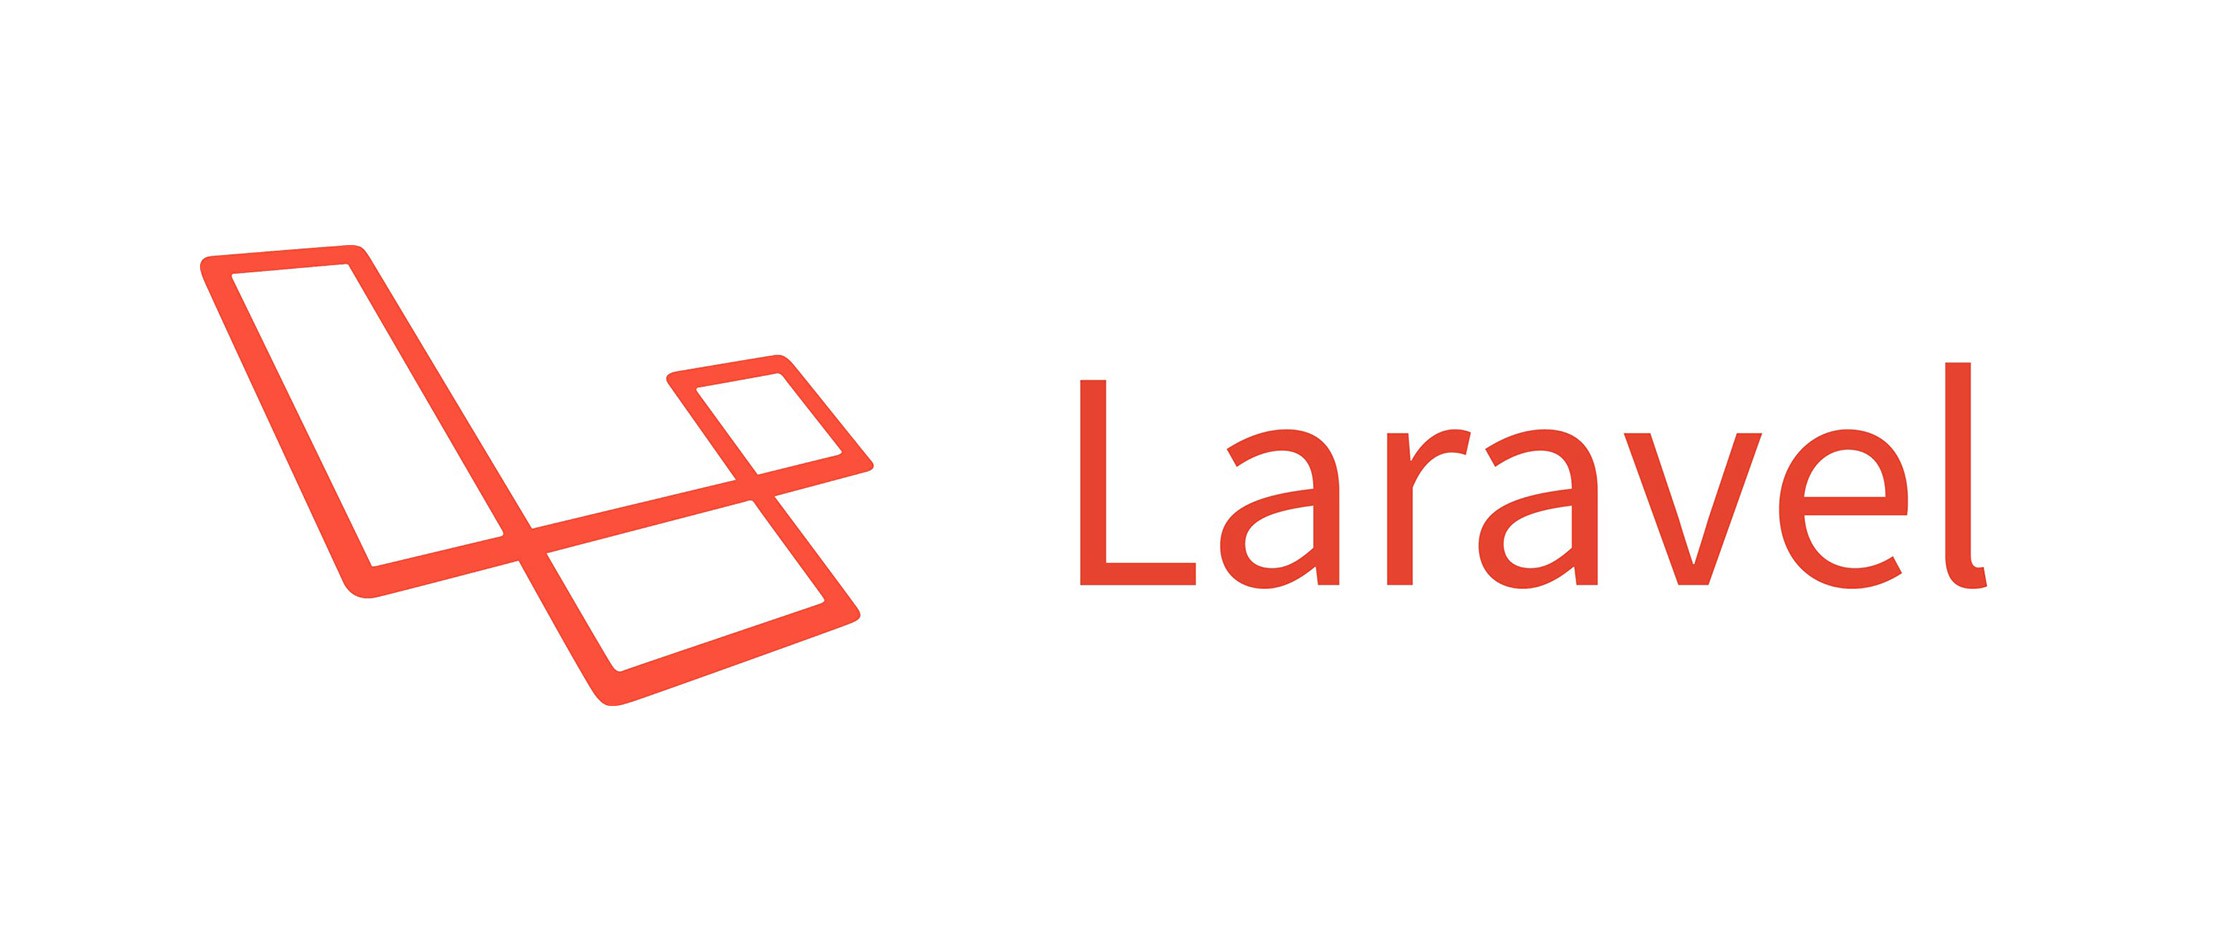 Laravel Development By Codefinity